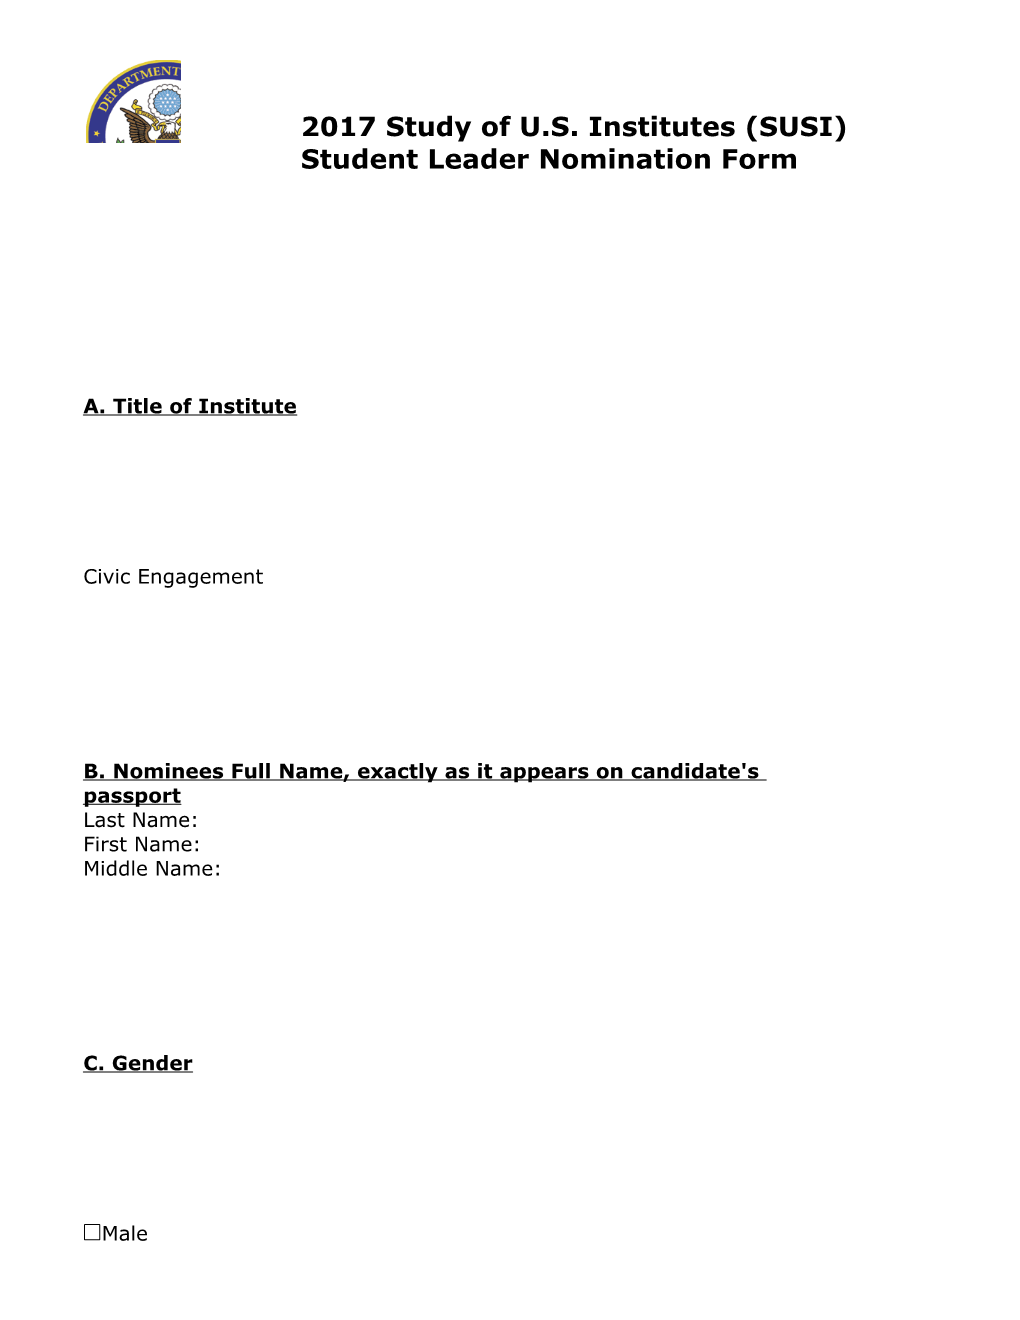 2017Study of U.S. Institutes (SUSI) Student Leader Nomination Form